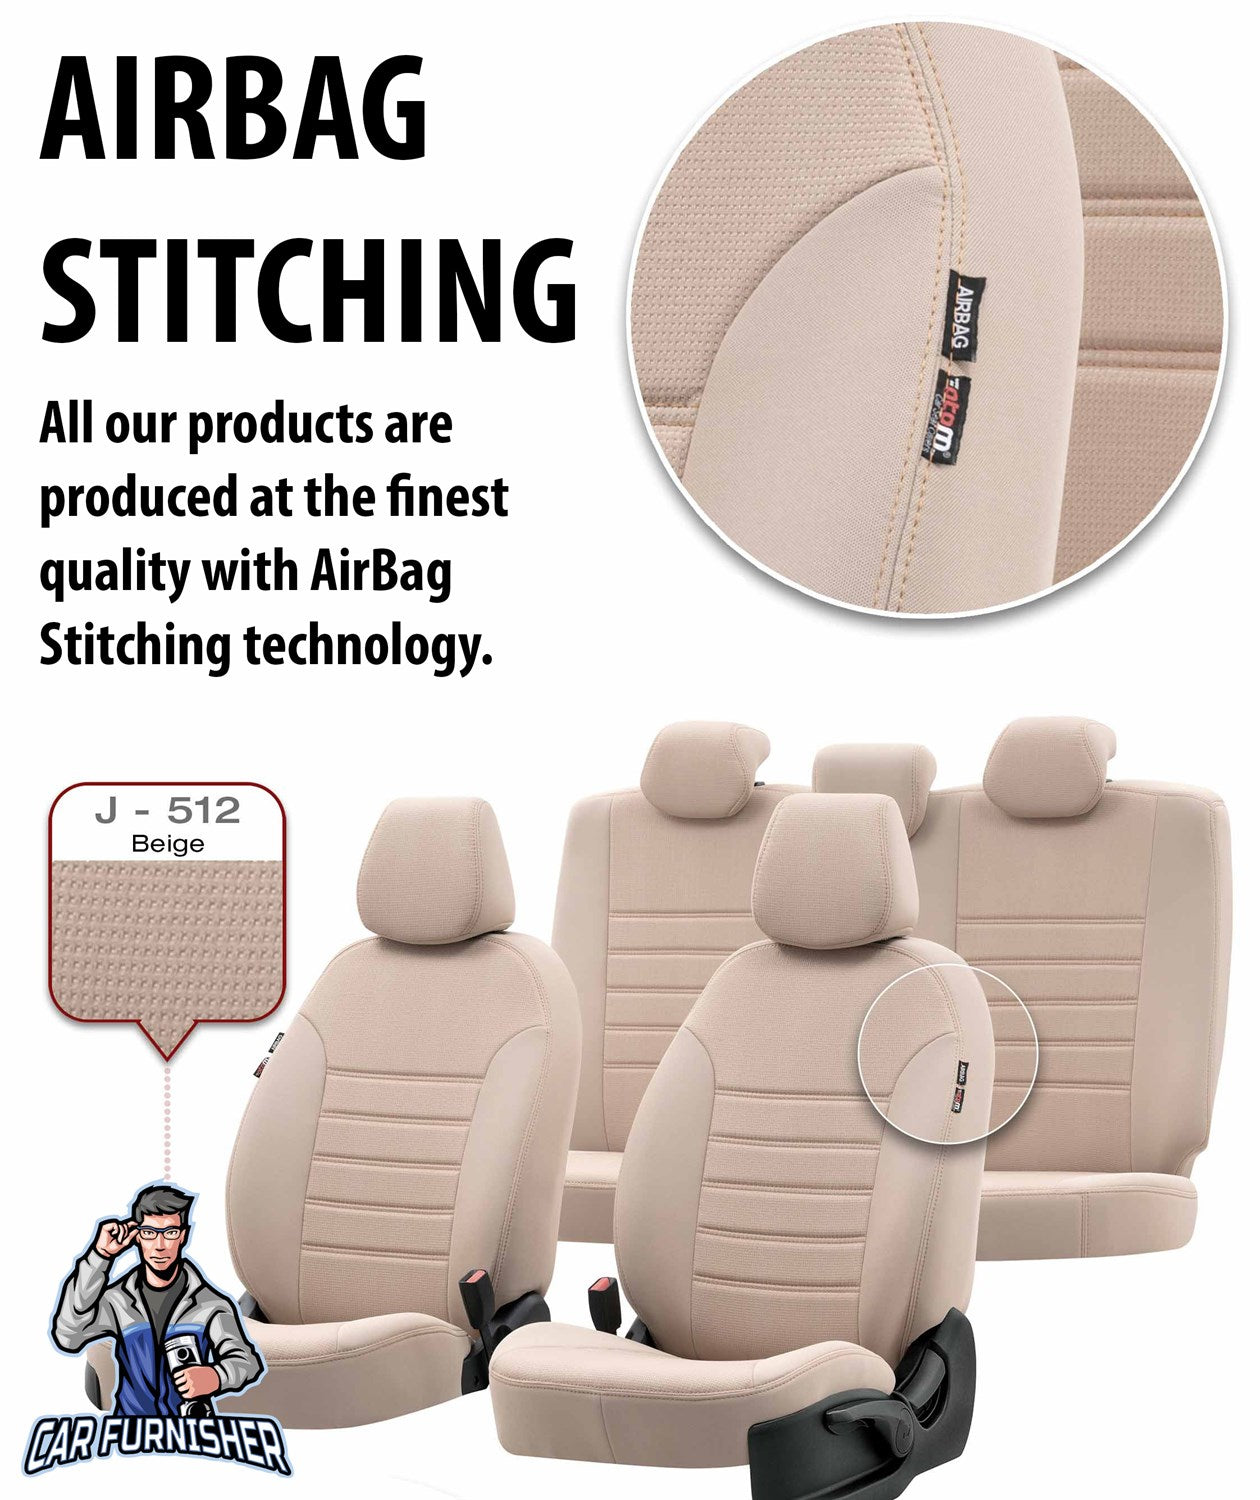 Skoda Yeti Seat Covers Original Jacquard Design Smoked Jacquard Fabric